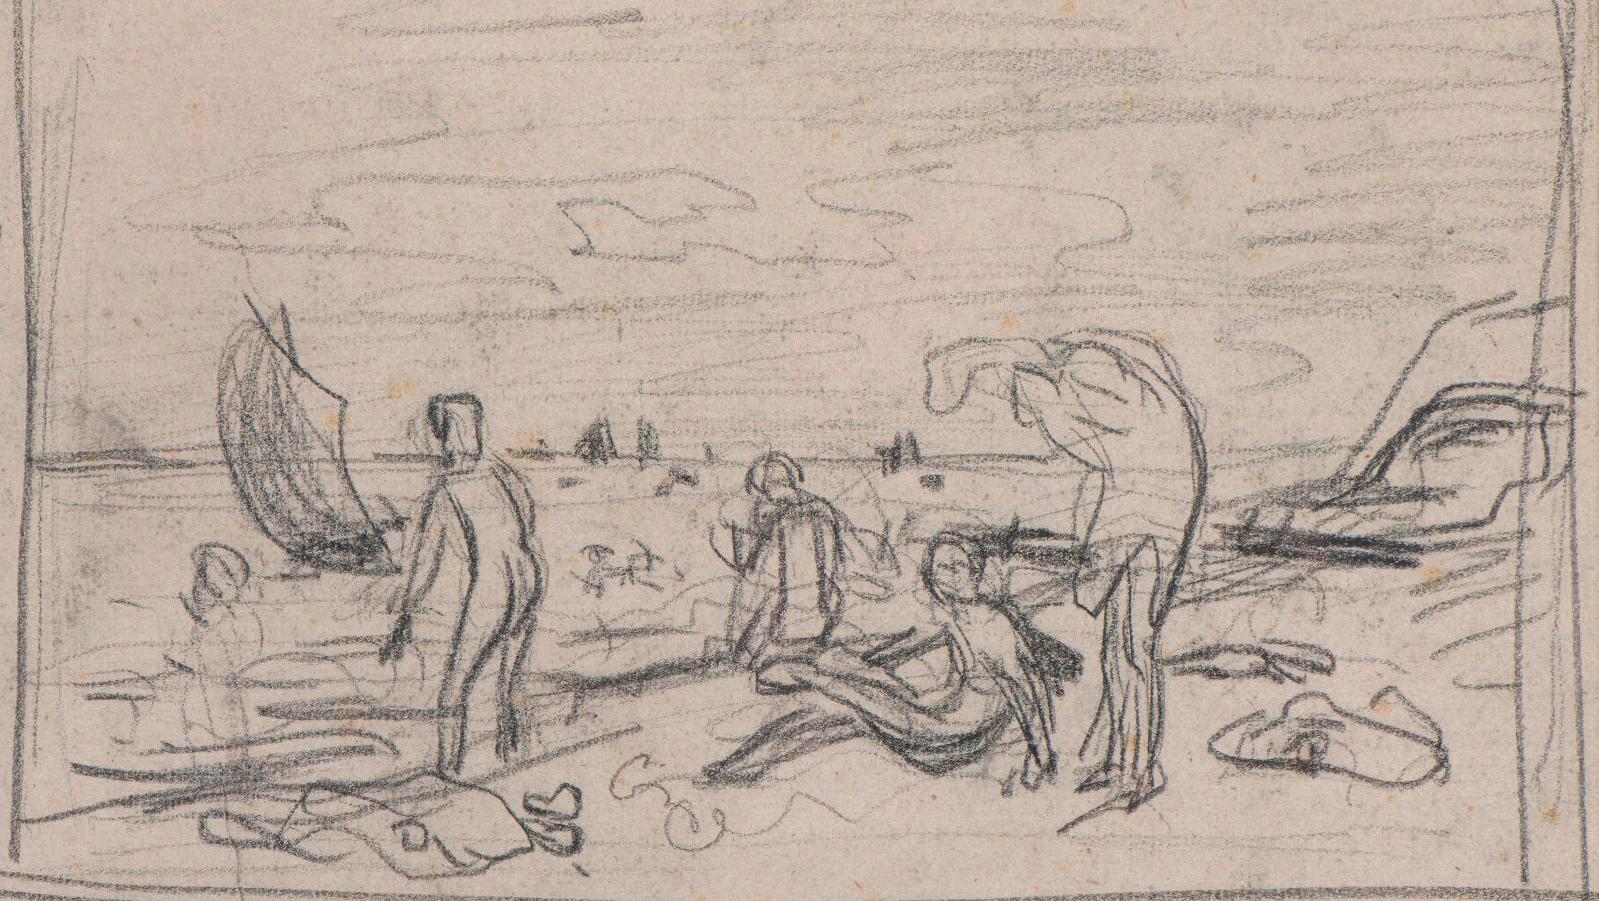 Frédéric Bazille (1841-1870), Baigneurs sur une plage (Bathers on a Beach), 1864... Focillon-Baltrusaitis Collection: Icons of Art History